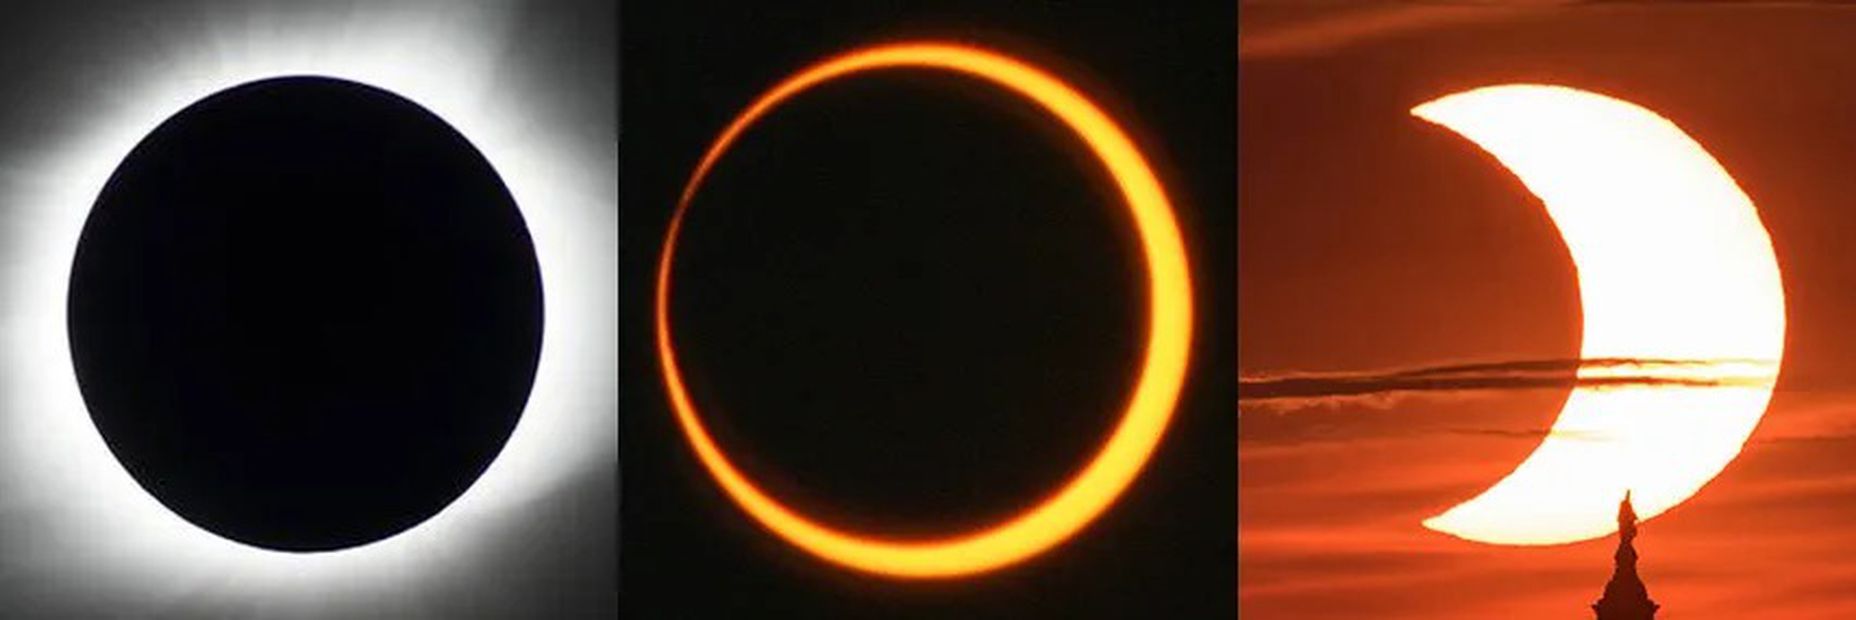 Los eclipses se producen cuando un planeta o la luna se interpone en el camino de la luz del sol. Foto: NASA